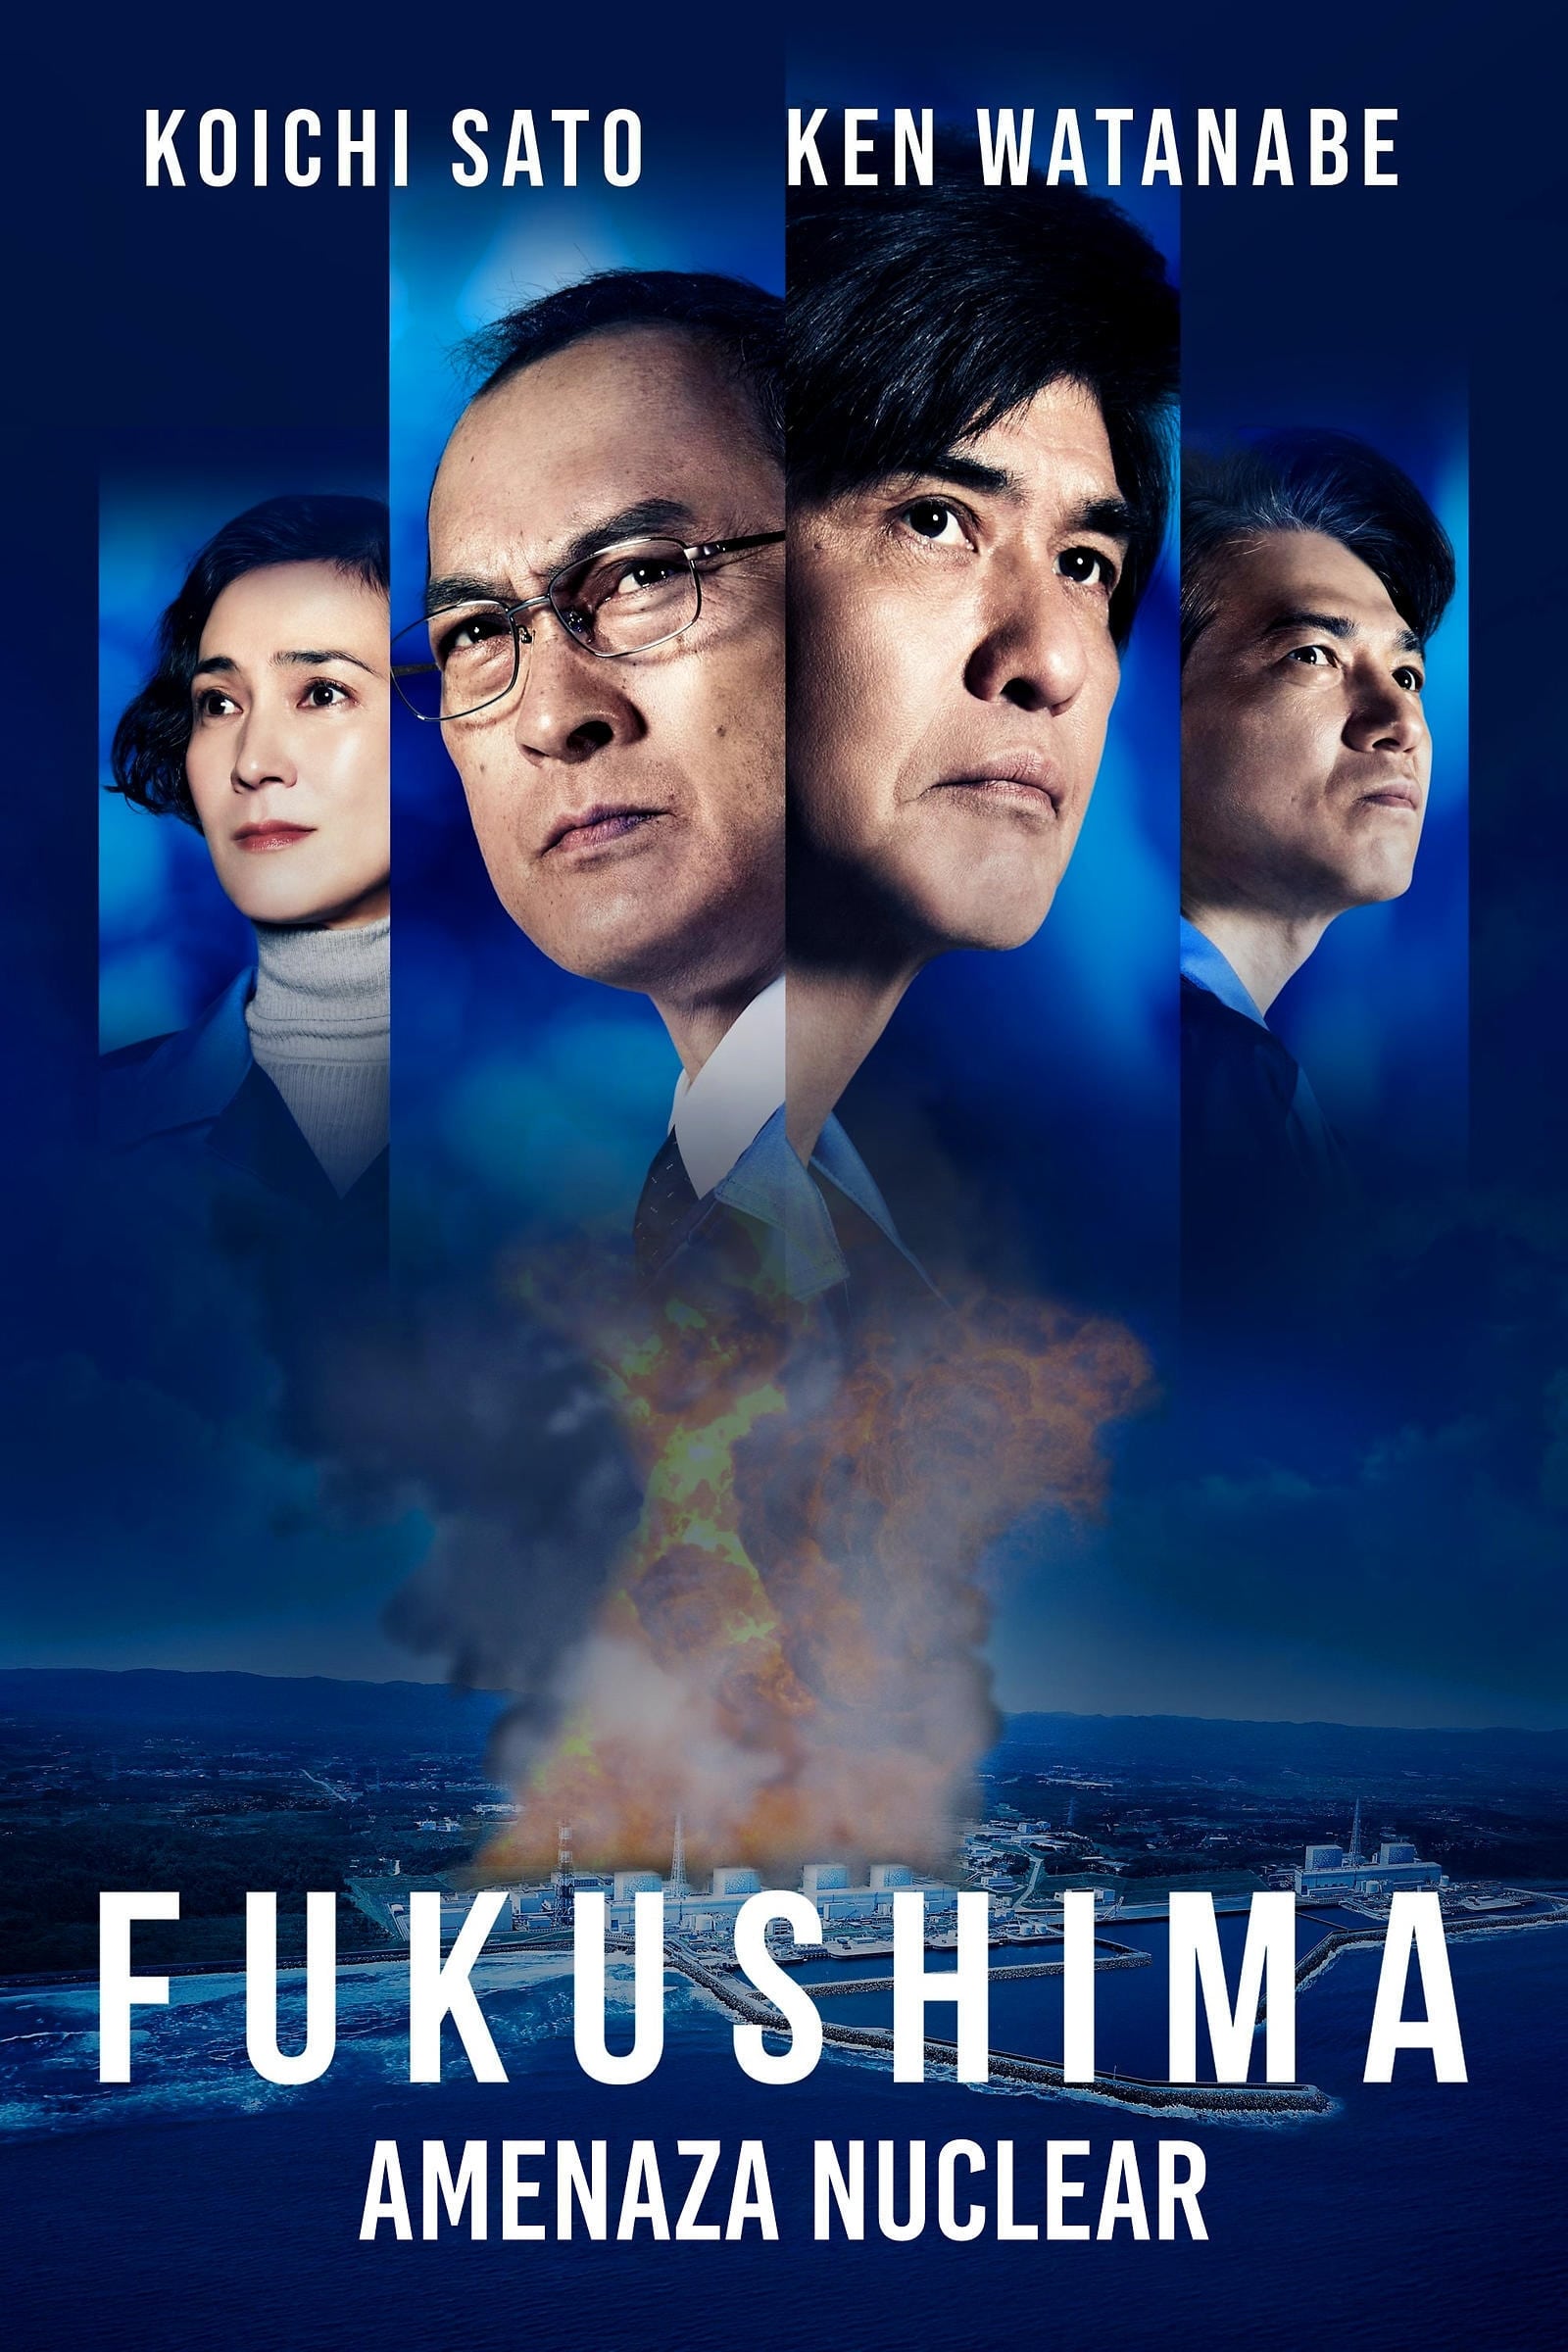 Fukushima: Amenaza Nuclear (2020) PLACEBO Full HD 1080p Latino